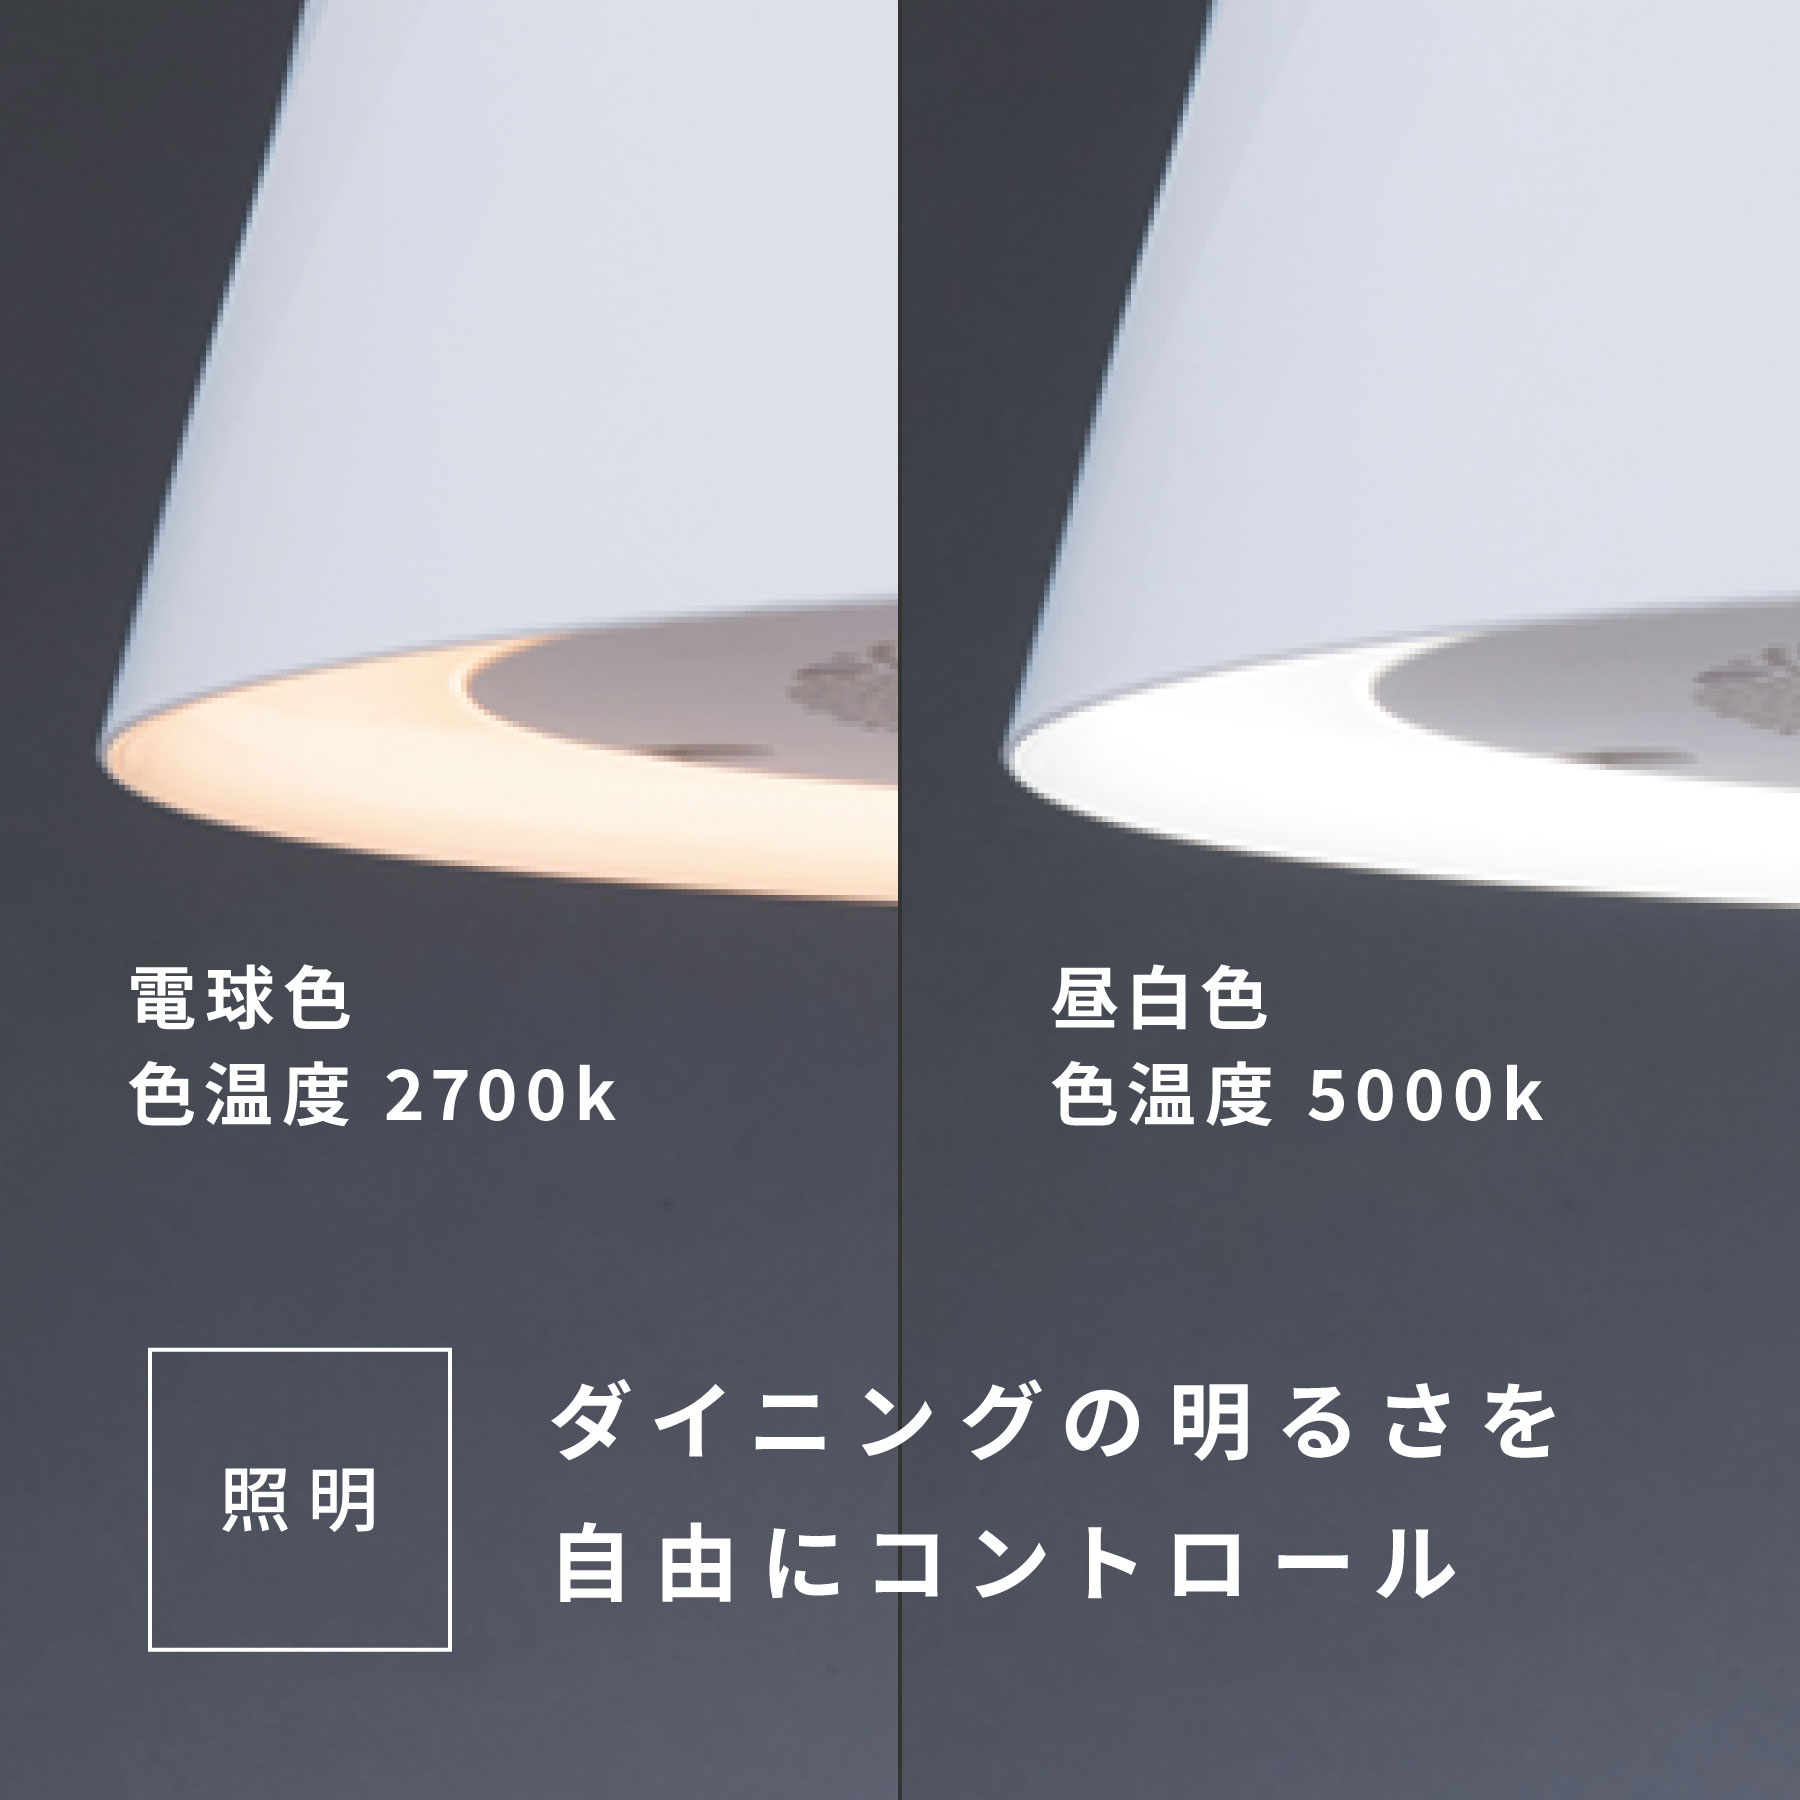 富士工業 ダイニング照明 クーキレイ 空気清浄機能 調光・調色 ホワイト C-( 良品)